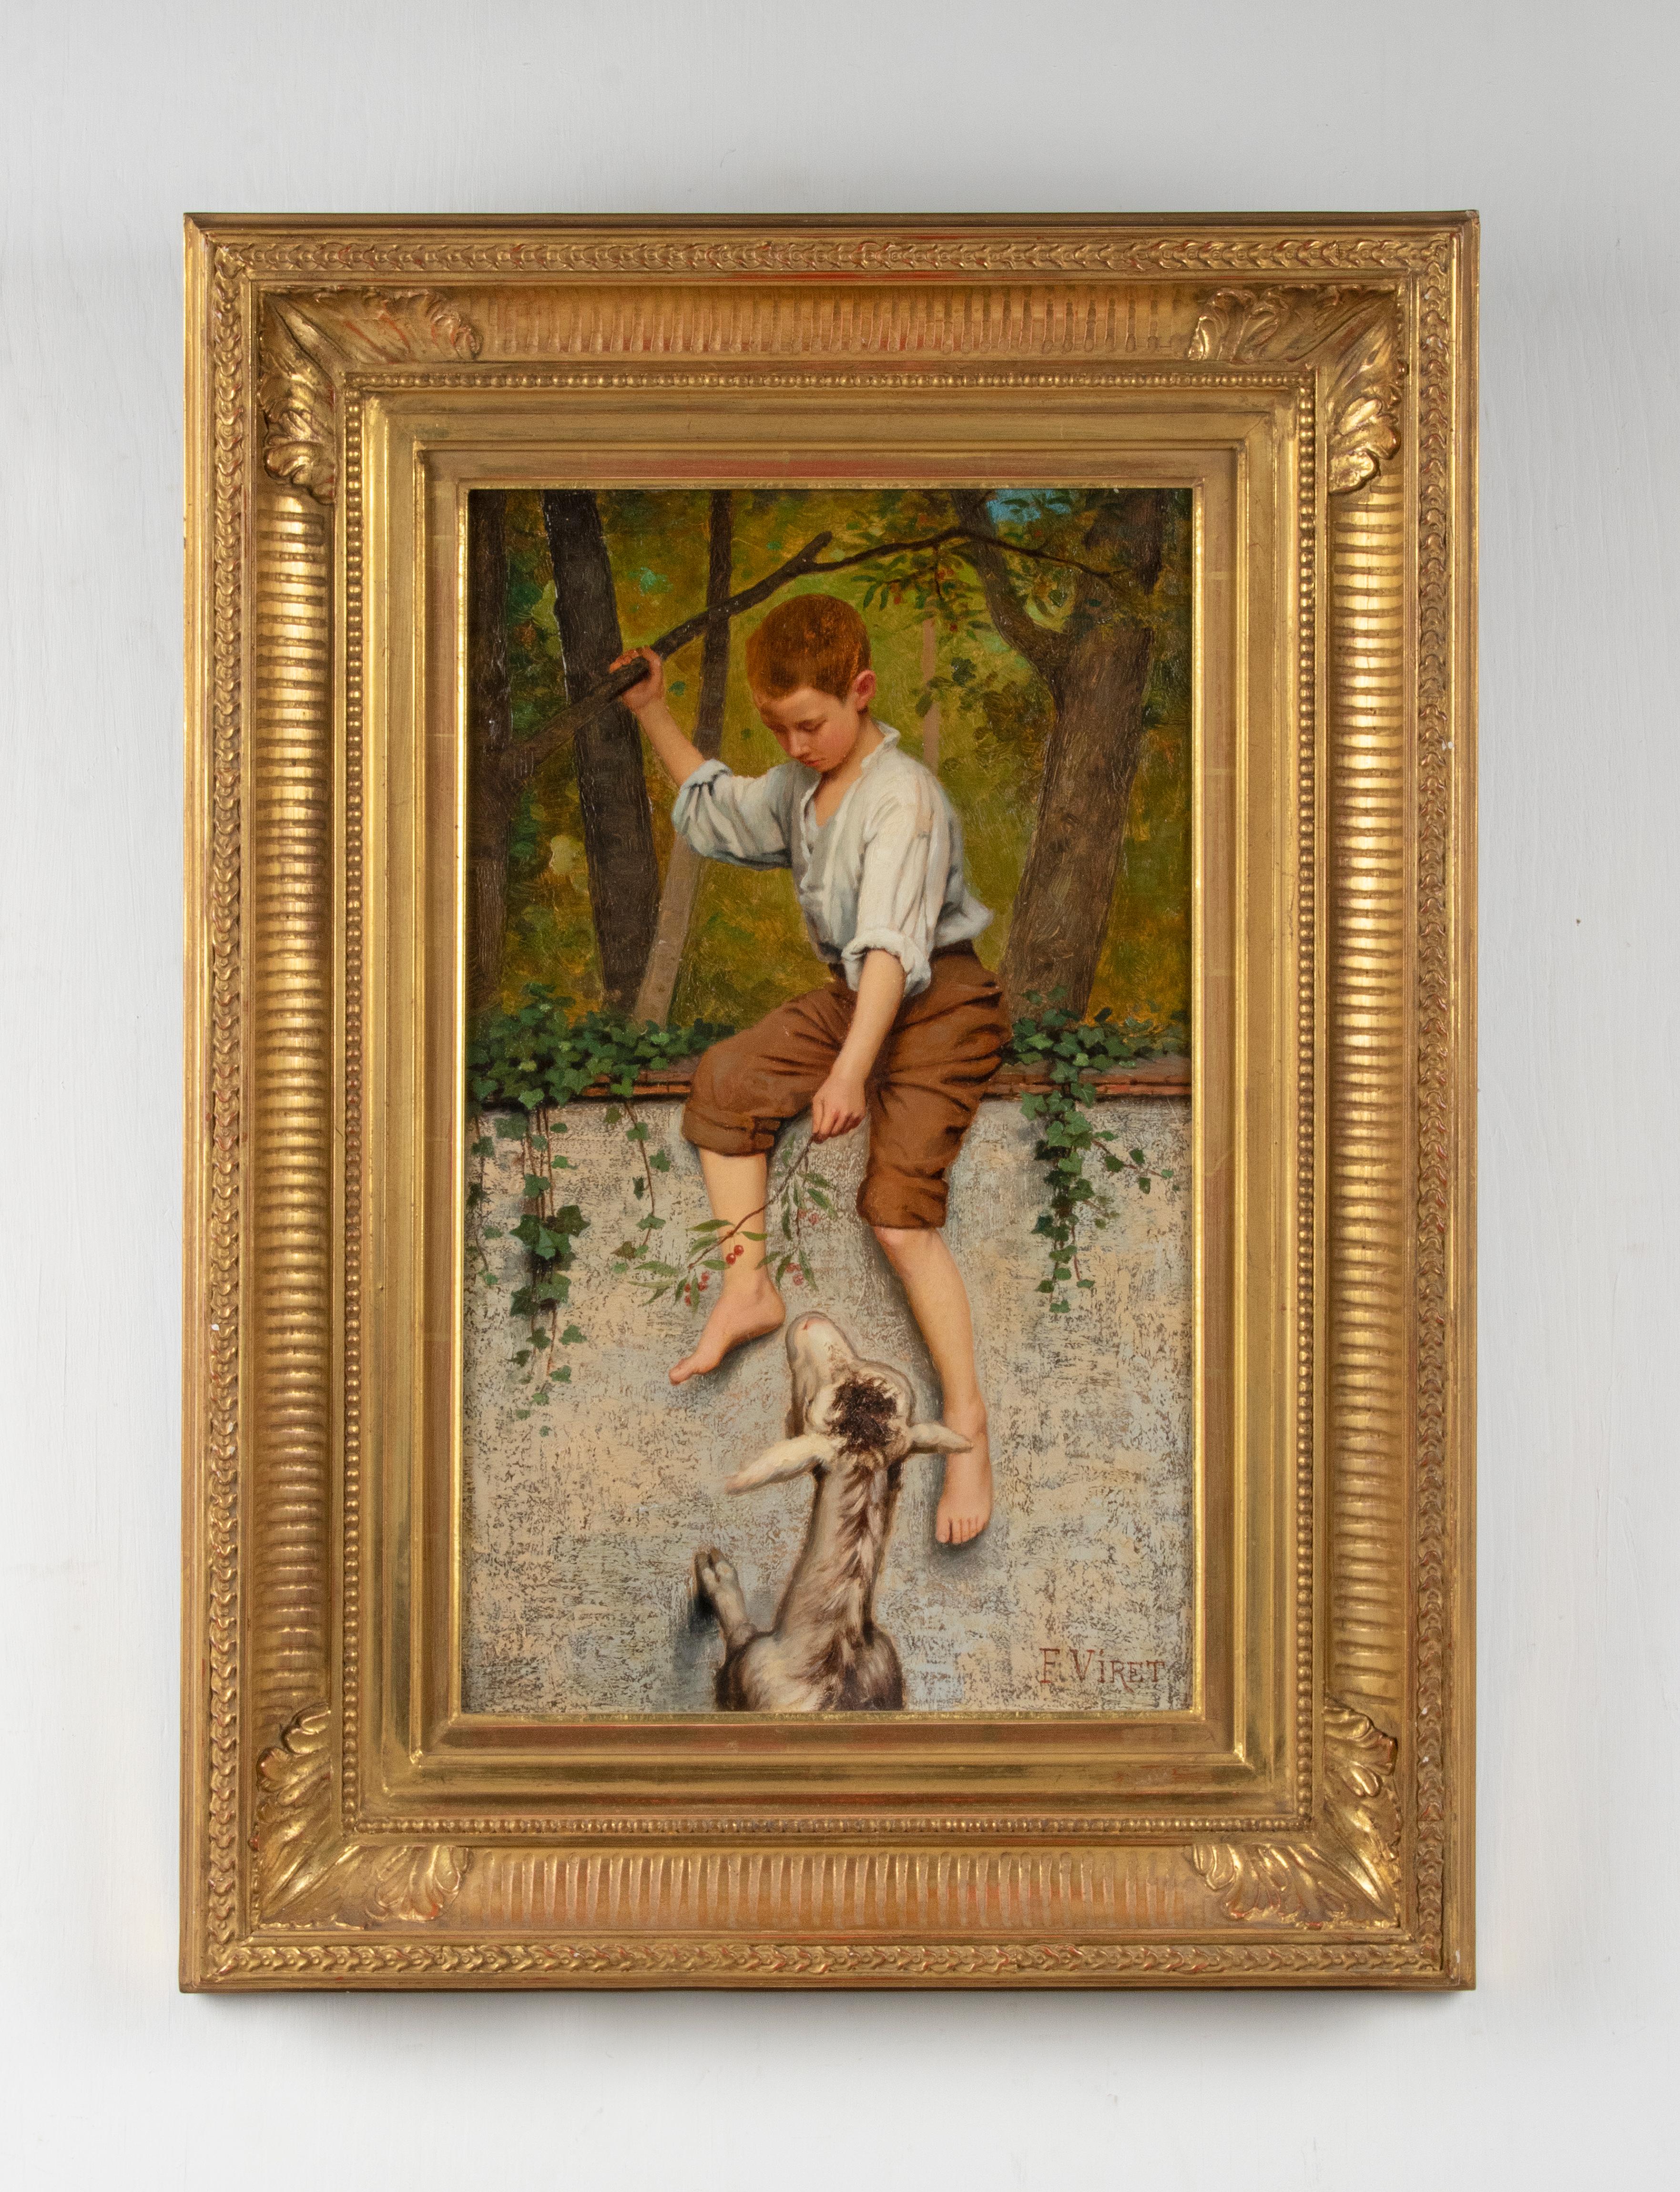 Une belle peinture à l'huile représentant un garçon nourrissant une chèvre avec des baies. Elle est peinte sur un panneau en bois. Signé à droite sous : Frédéric Viret. Dans un élégant cadre en feuille d'or. La peinture et le cadre sont en bon état.